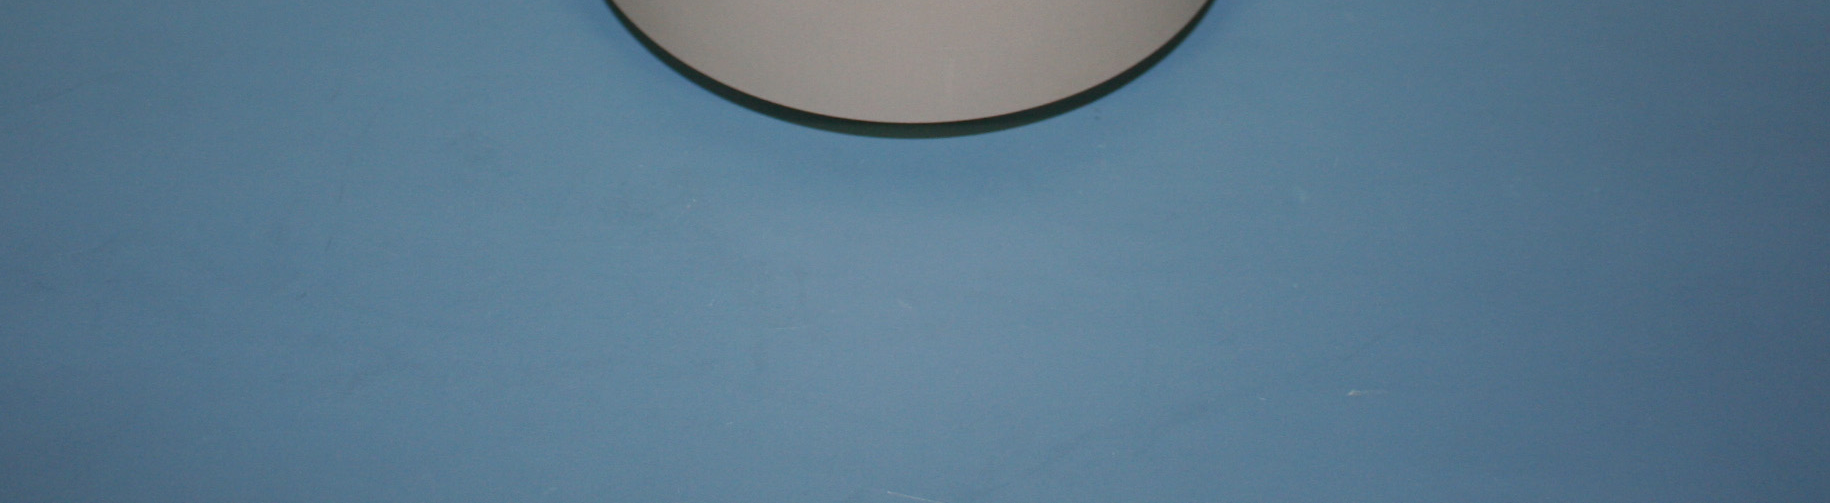 Kaseta (rama w ramie) z blachy nierdzewnej V2A. Do pomieszczeń z podłogami czyszczonymi na sucho lub mokro. Zagłębienie minimalne, po zamontowaniu puszek montaŝowych gniazd GB3 85 mm.